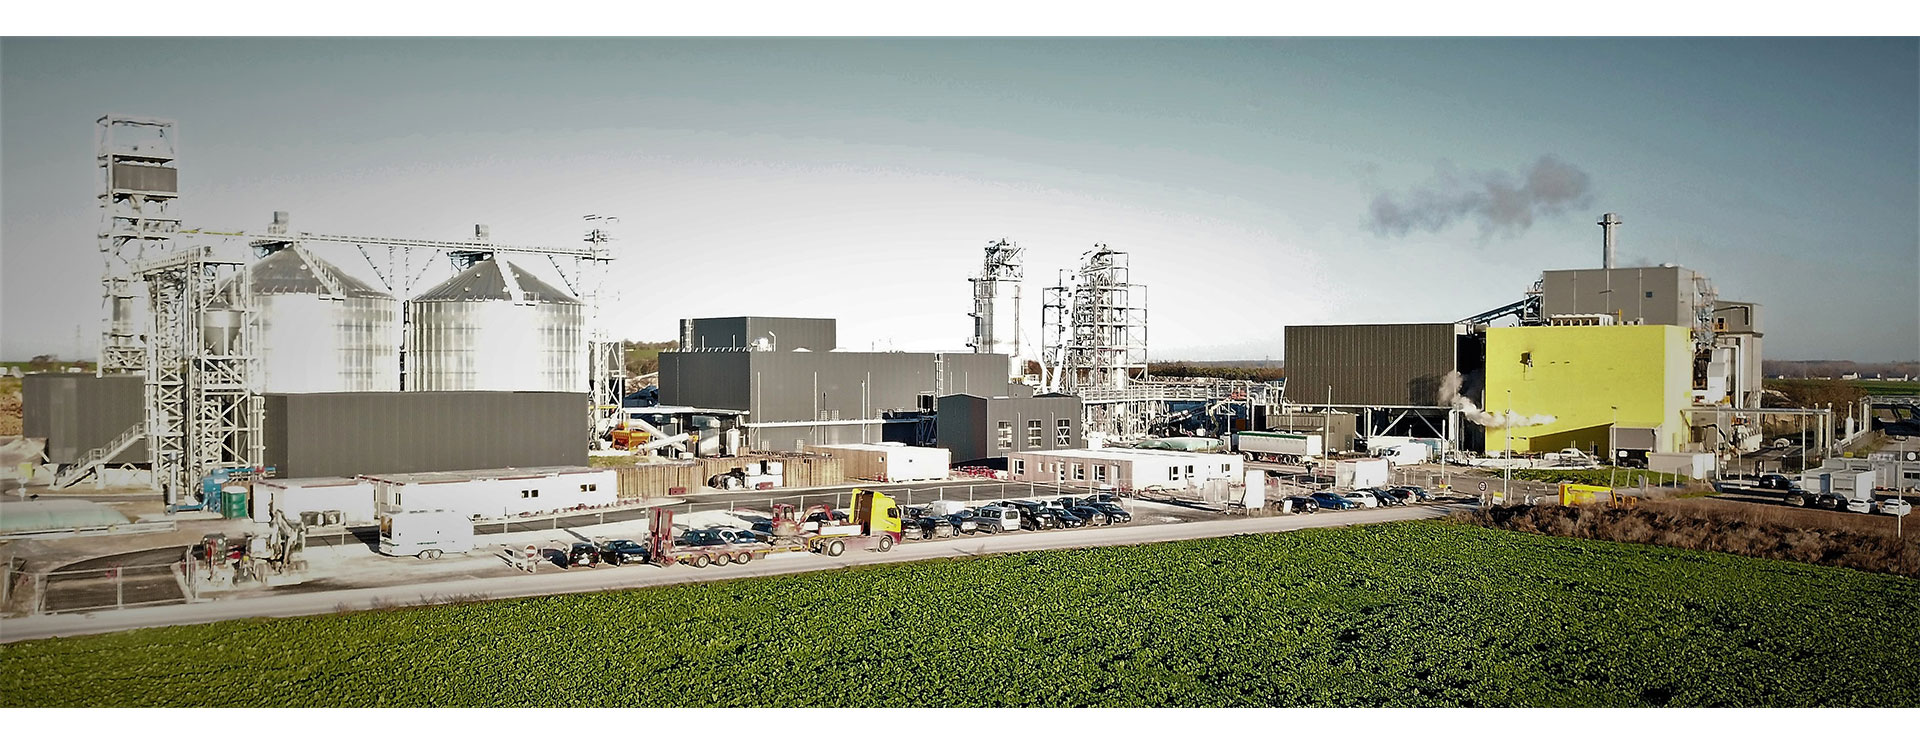 usine FICAP de production de granulés HPCI Green Pellet® - Pomacle (Marne) - © Européenne de Biomasse